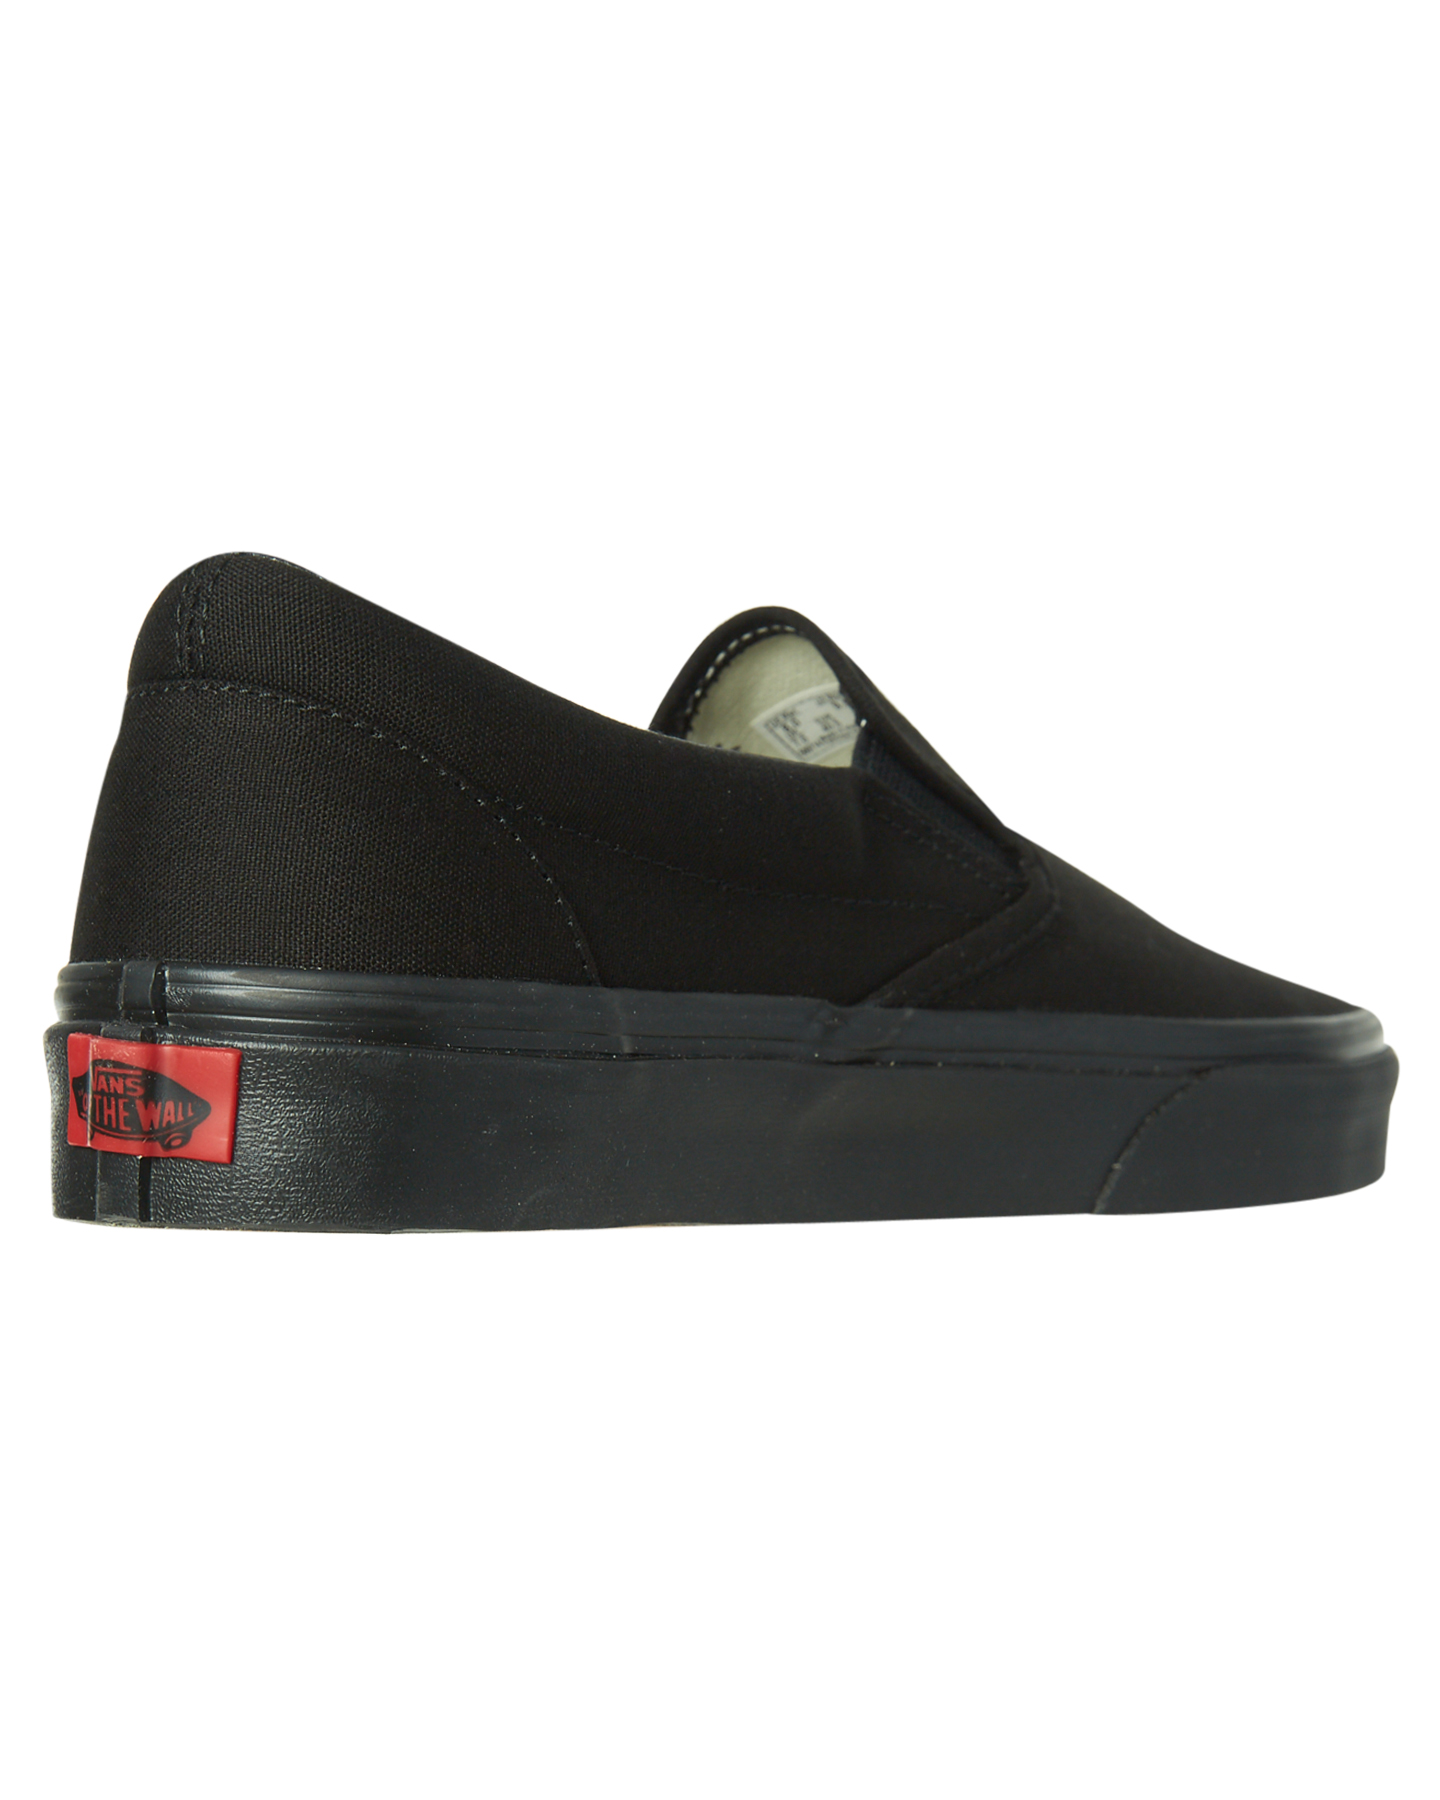 Vans Mens Classic Slip On Shoe - Black 